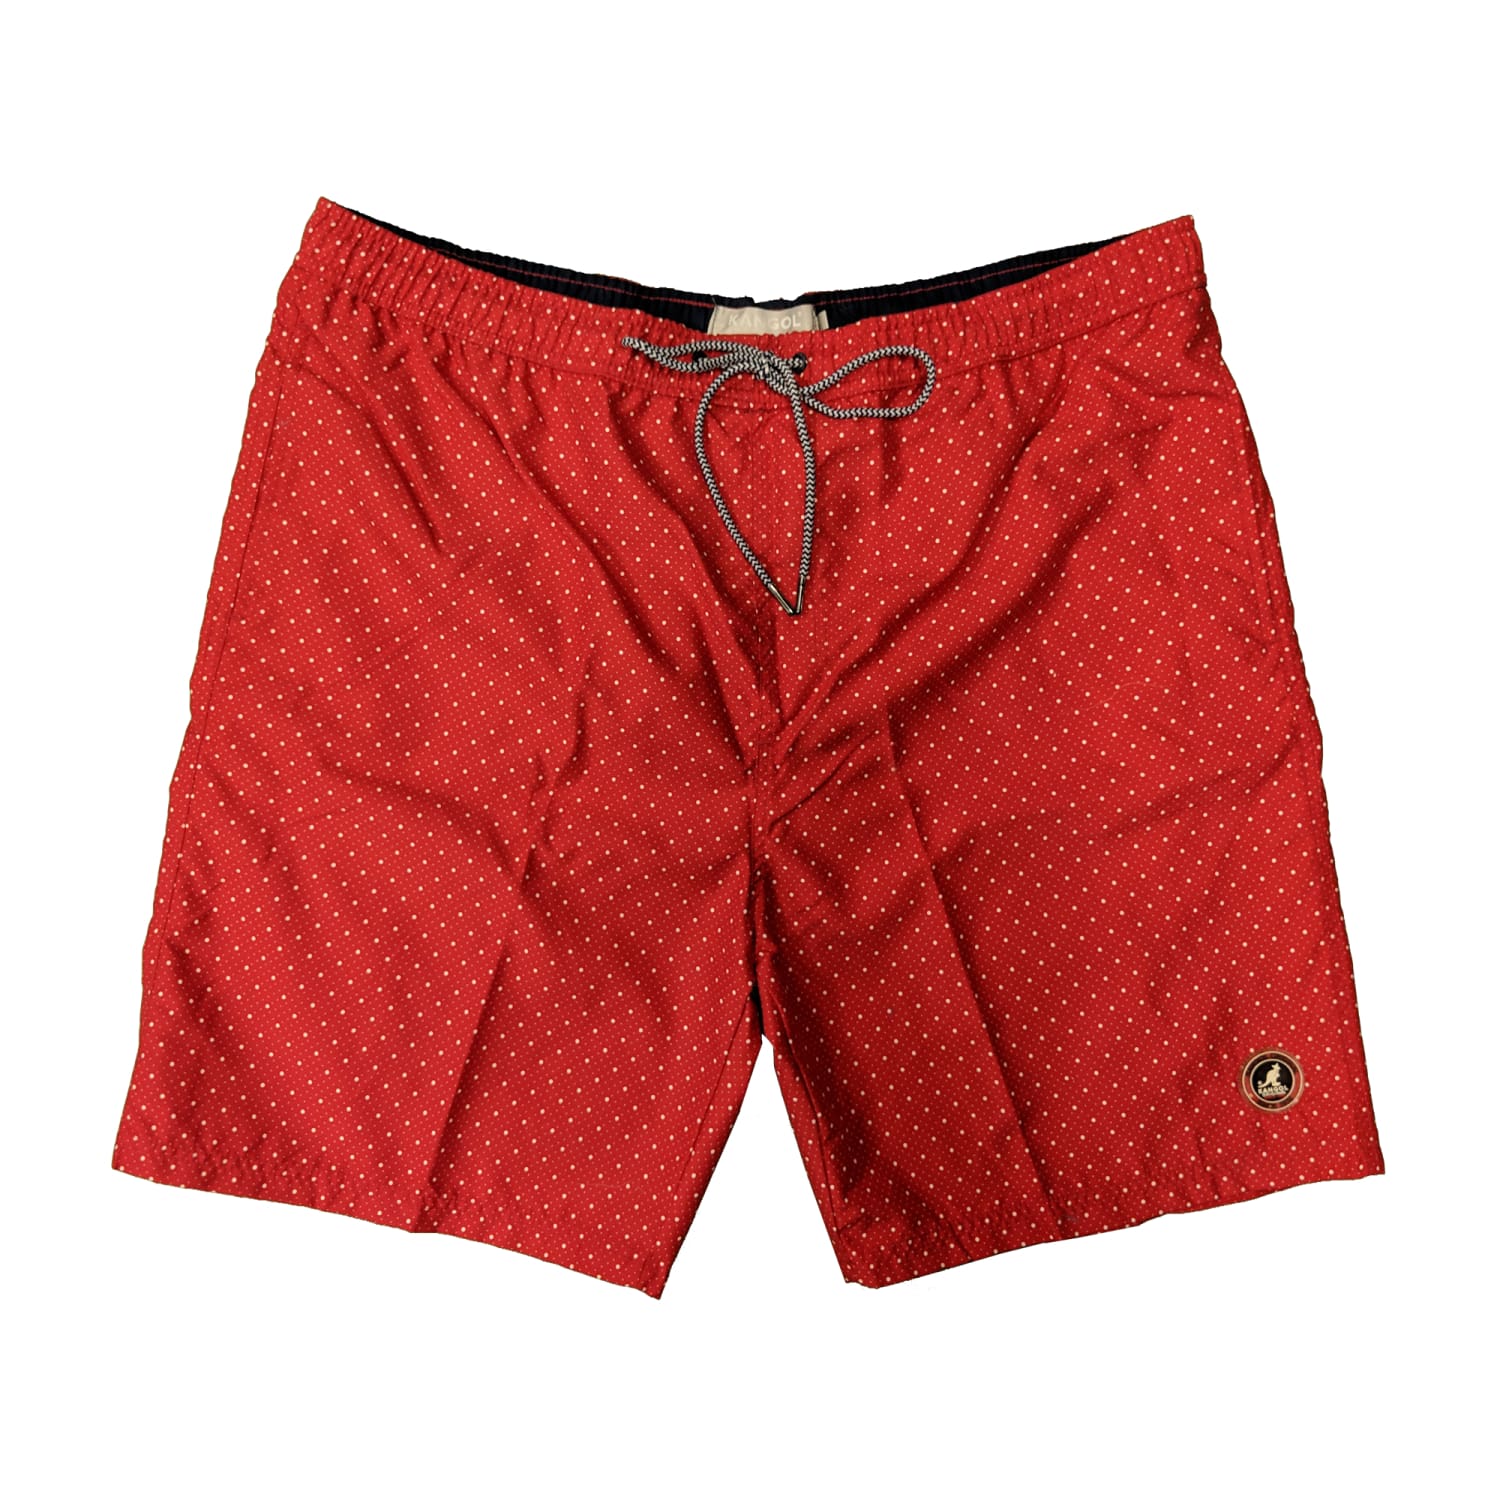 Kangol Swim Shorts - K609178 - Cobar - Red 1